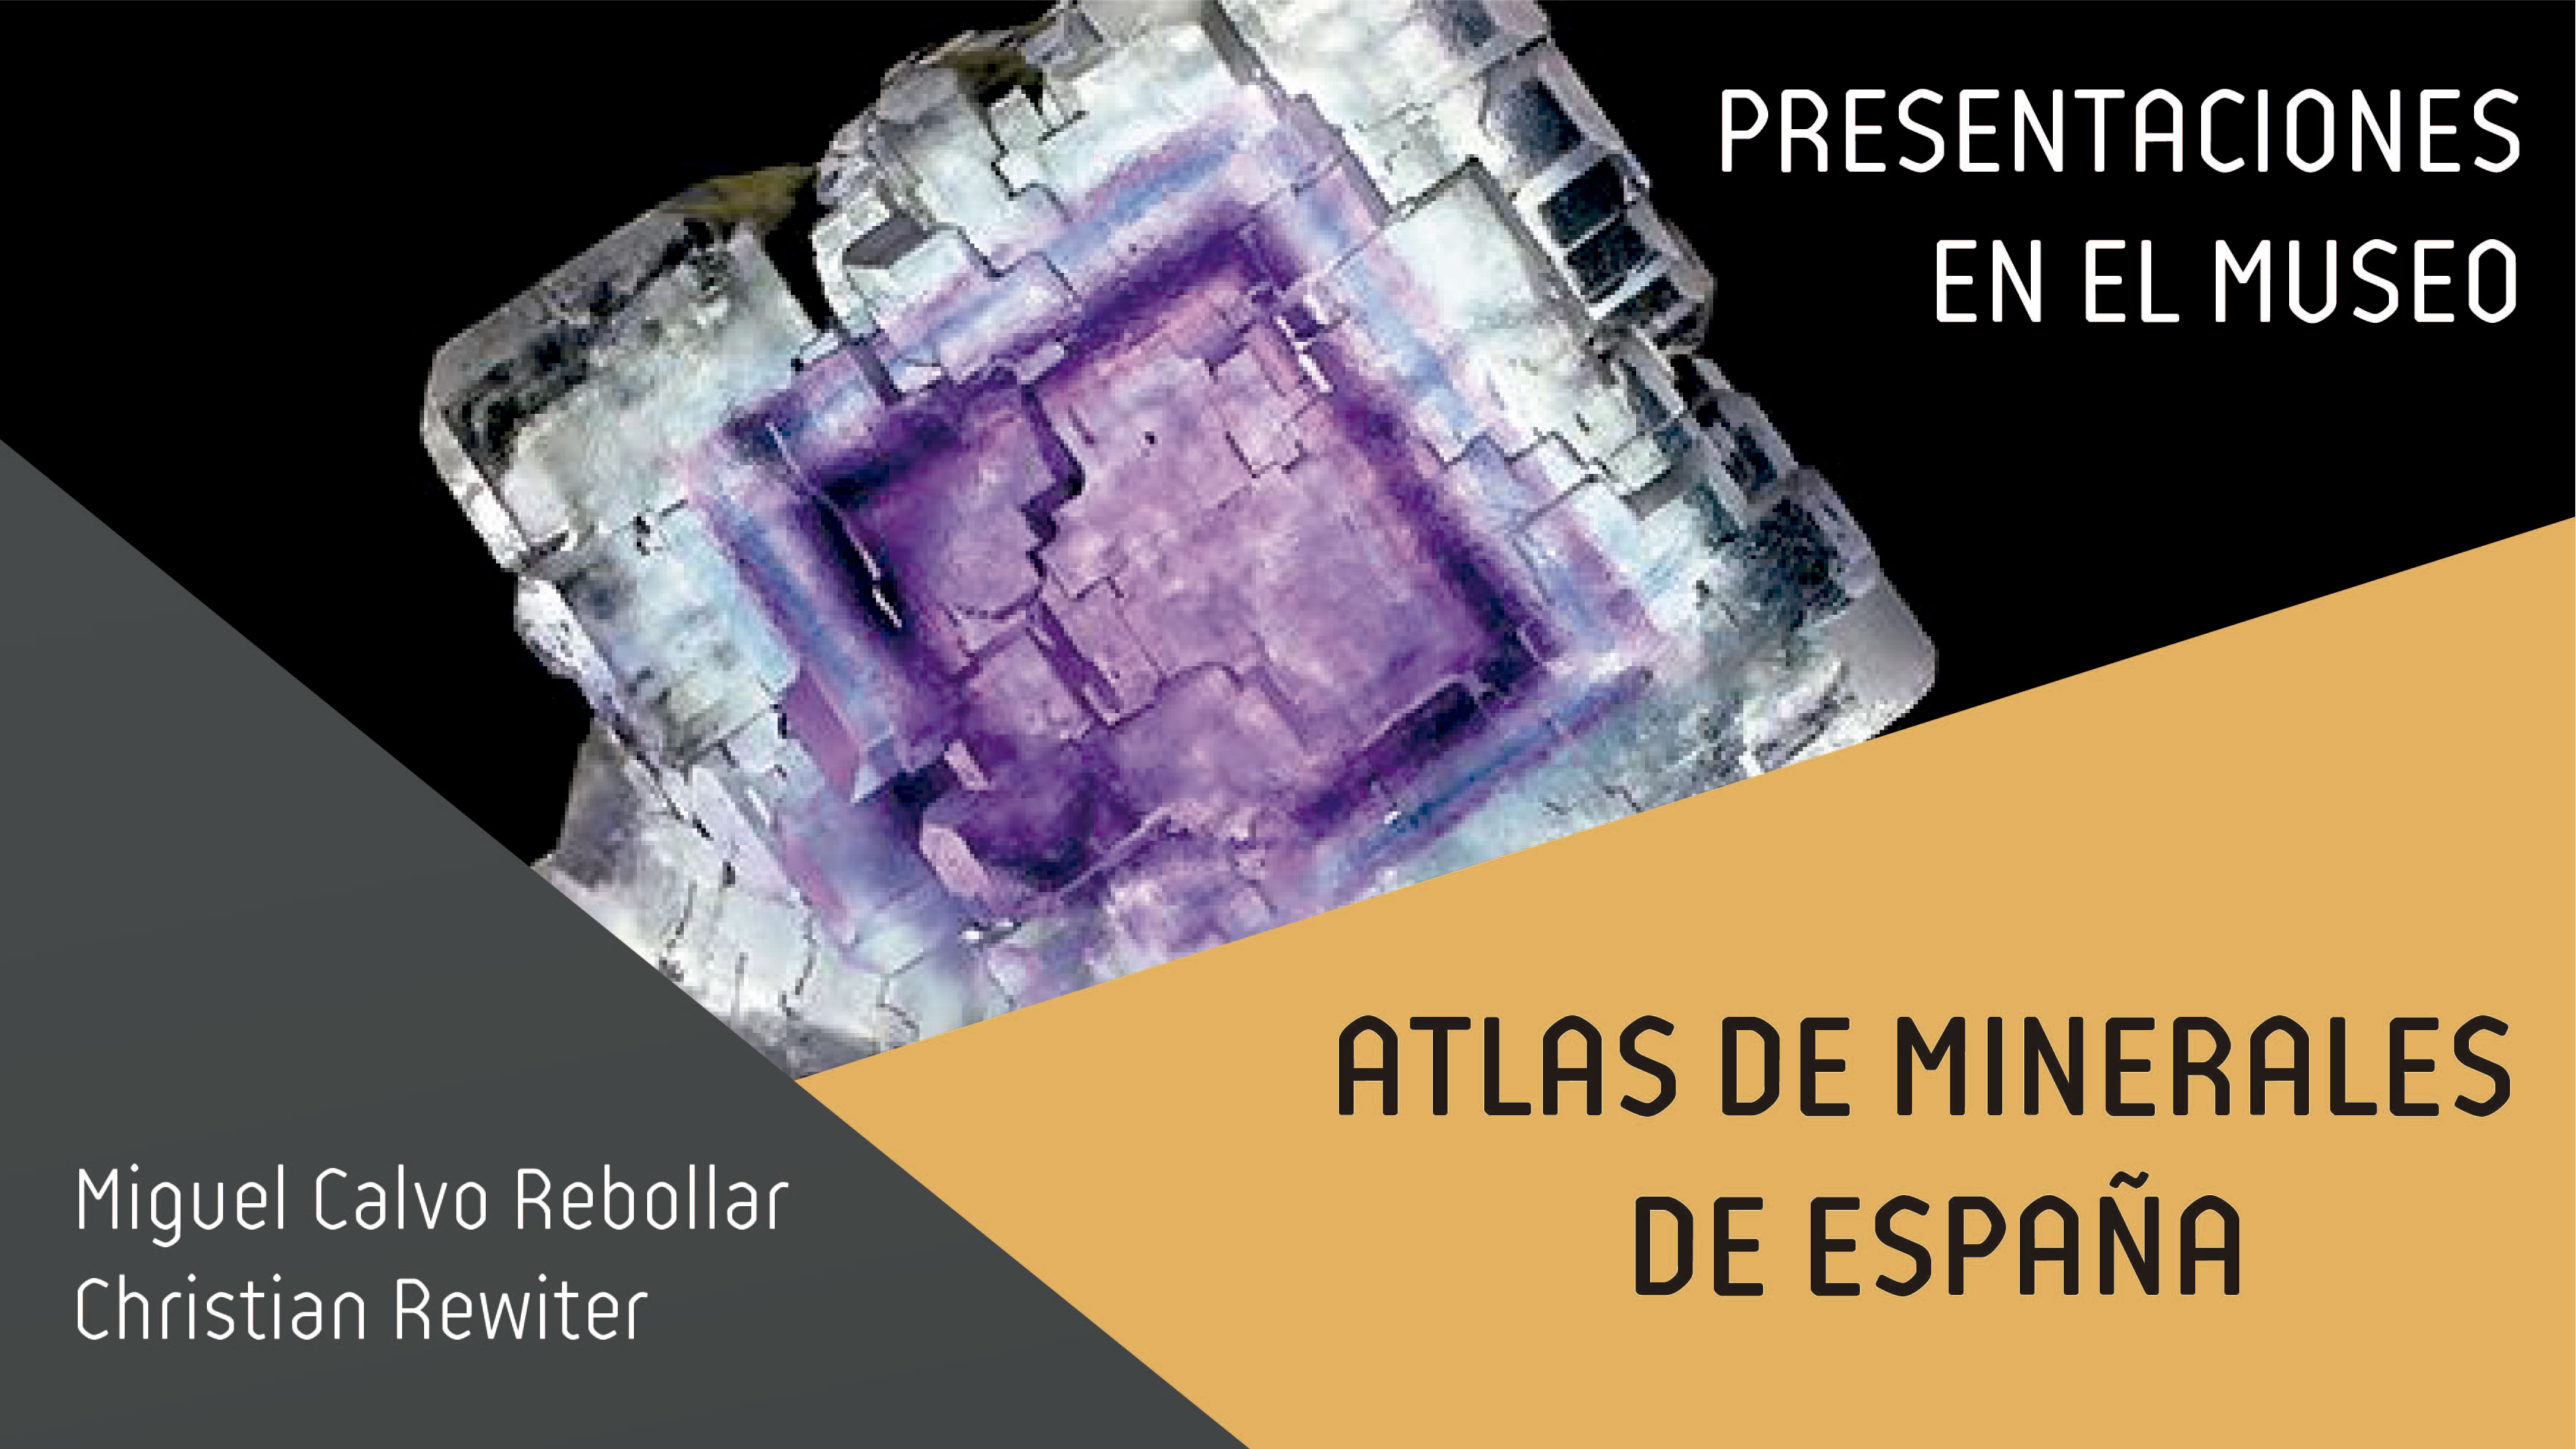 Atlas de minerales de España, próxima presentación en el MCNUZ